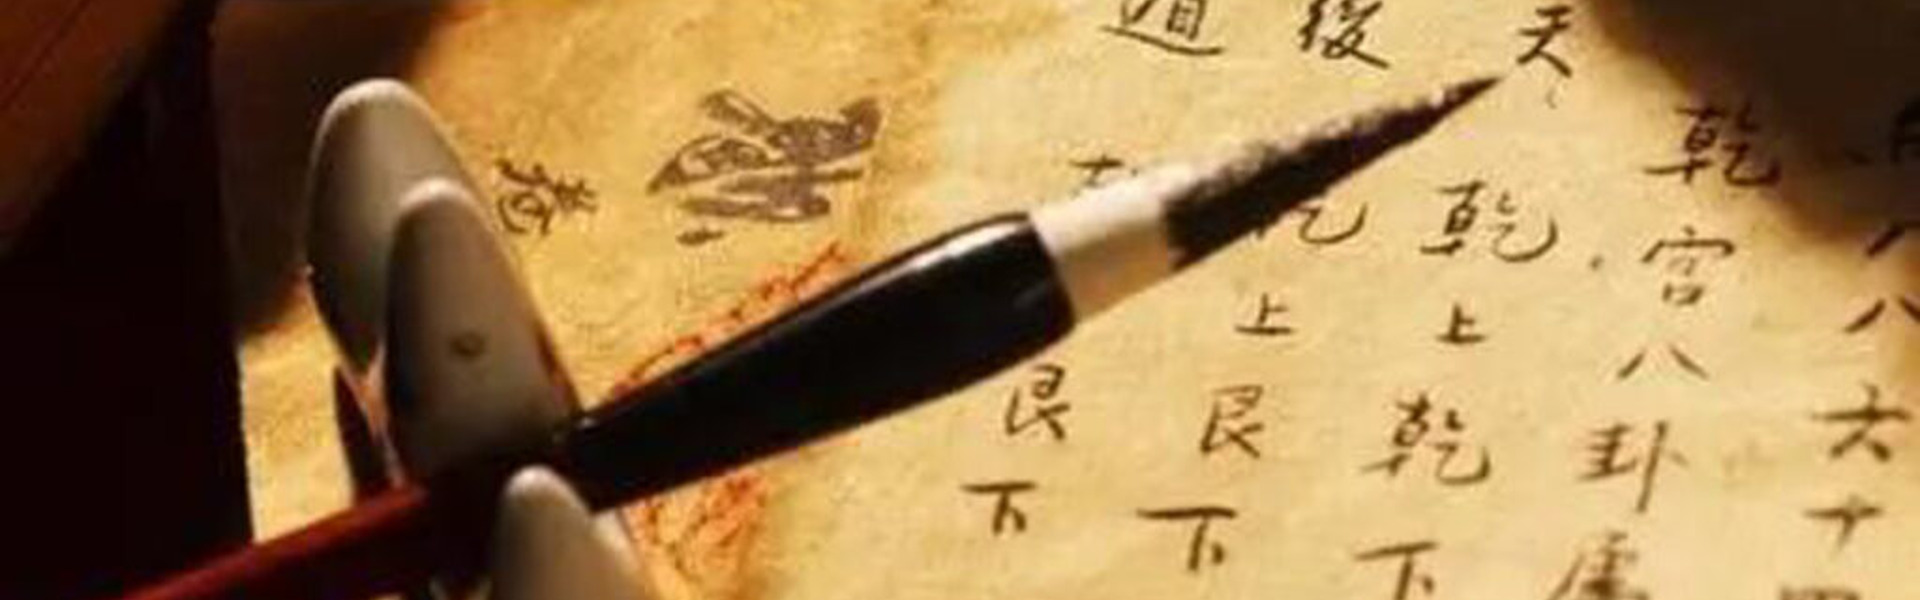 Kaligrafia i Qigong Prozdrowotny